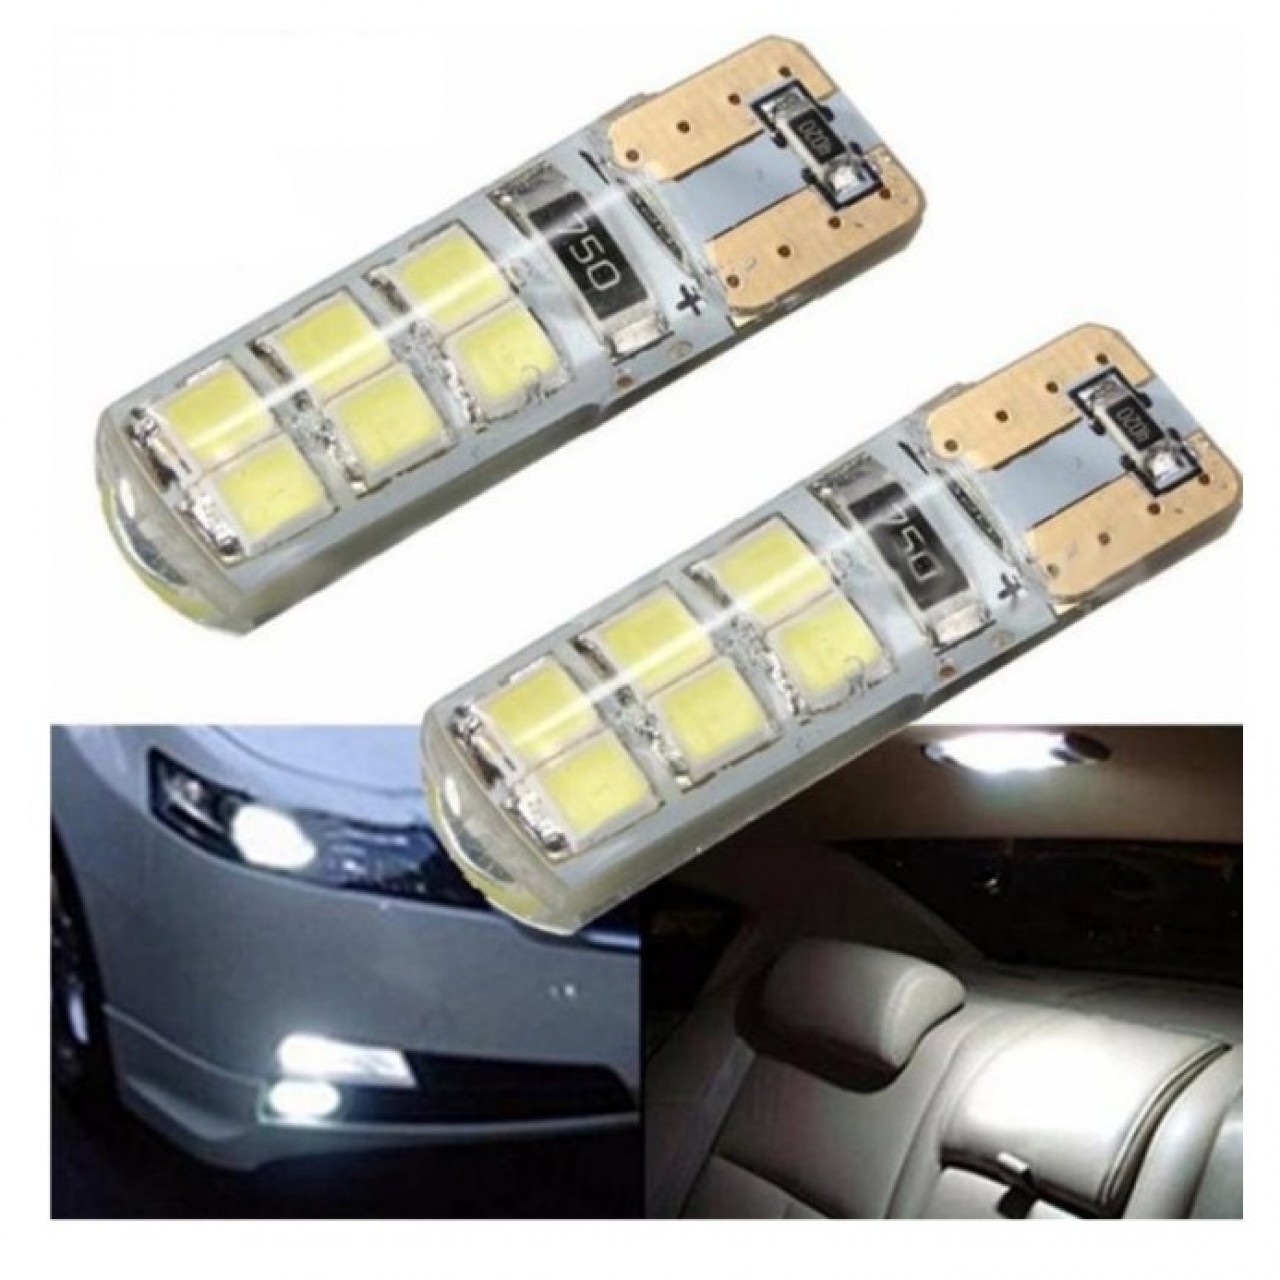 2 Pcs Auto led light 2W car light bulbs 12 LED Super Bright